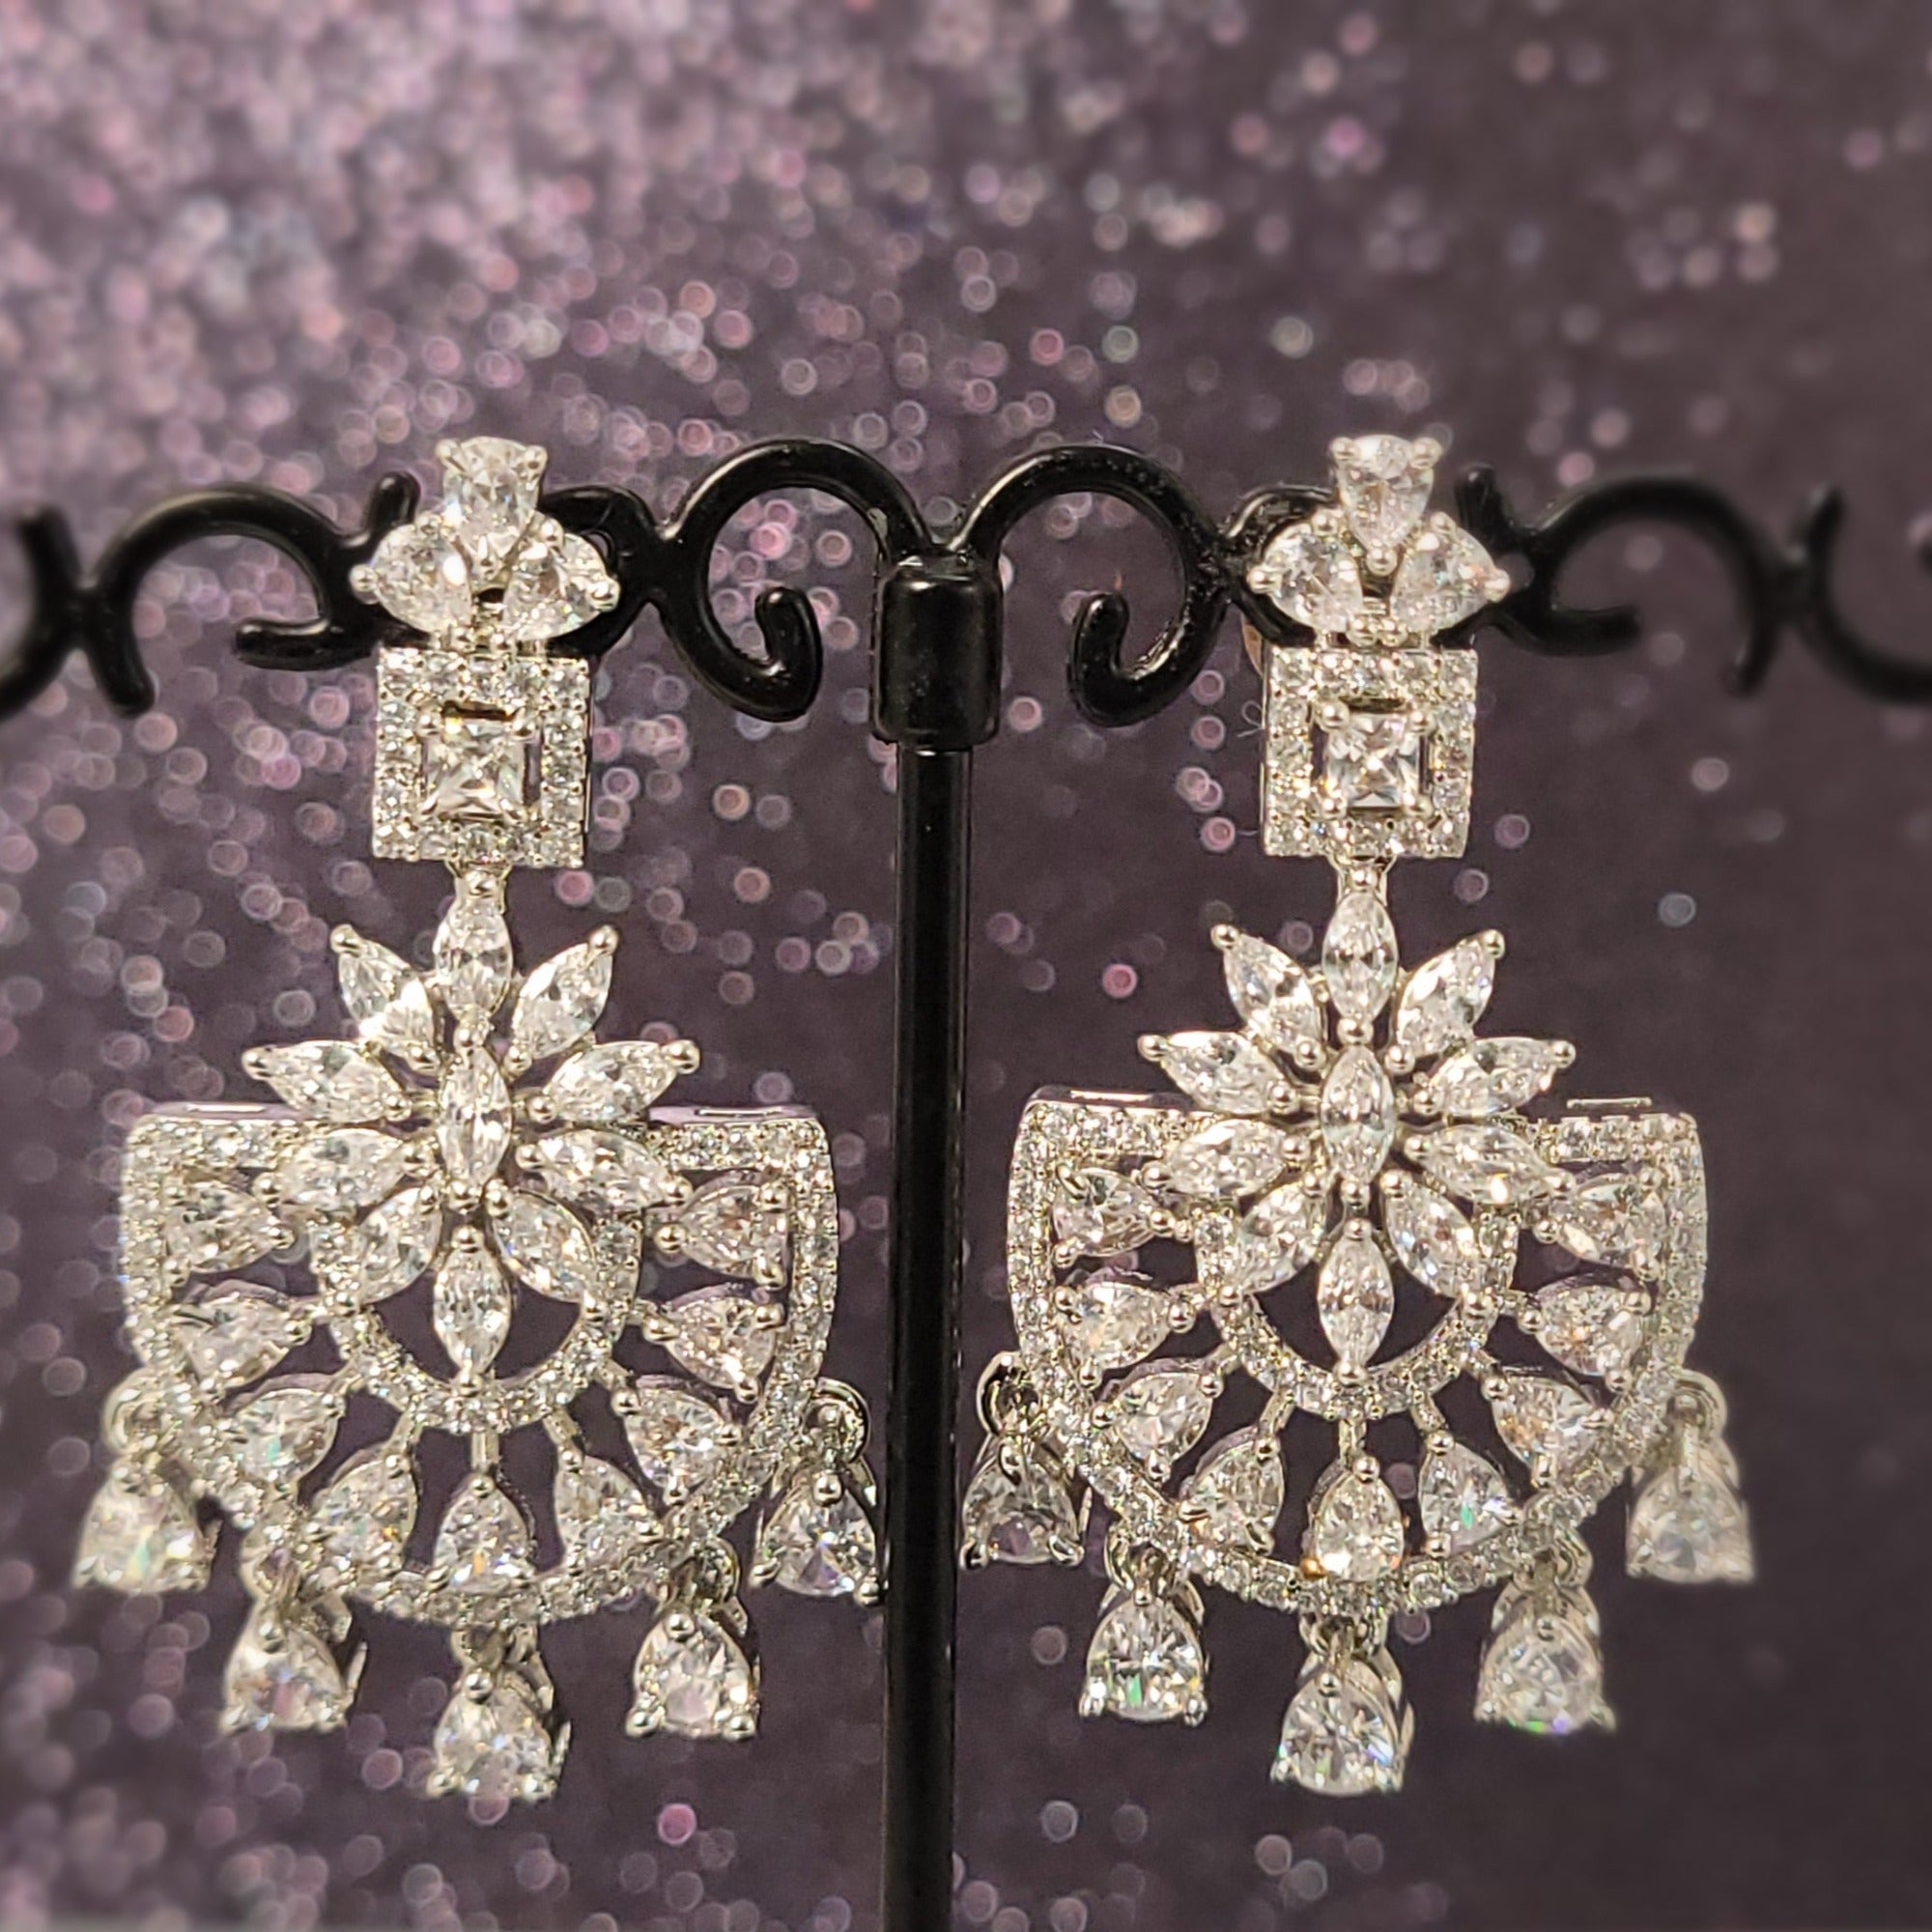 Women Jewelry  - Chandelier Earrings with drops - American Diamond